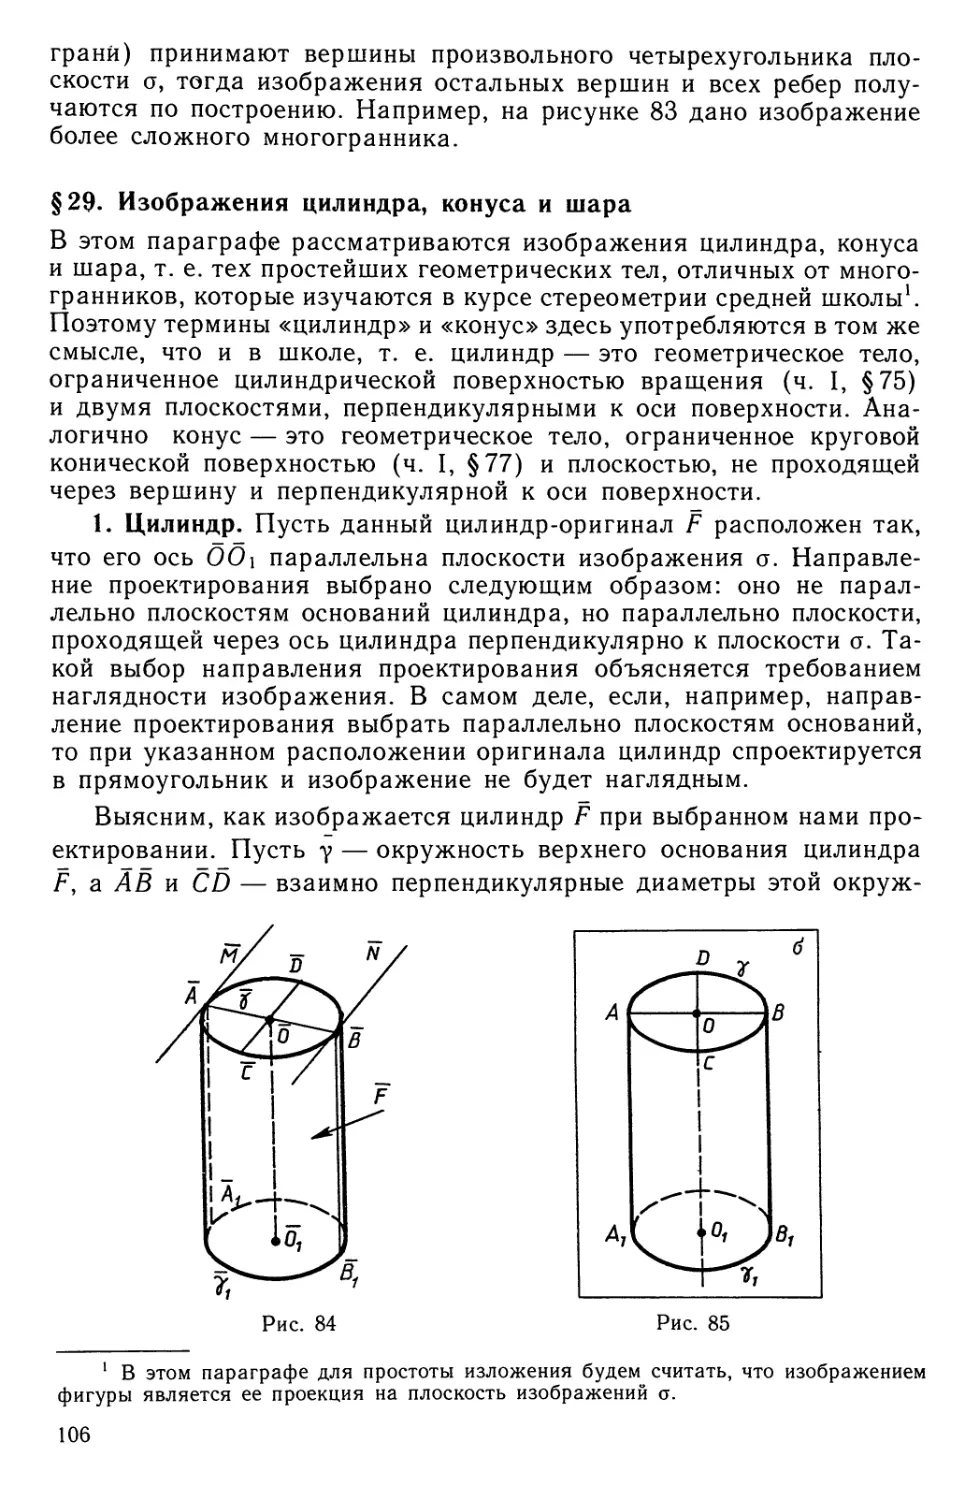 § 29. Изображения цилиндра, конуса и шара